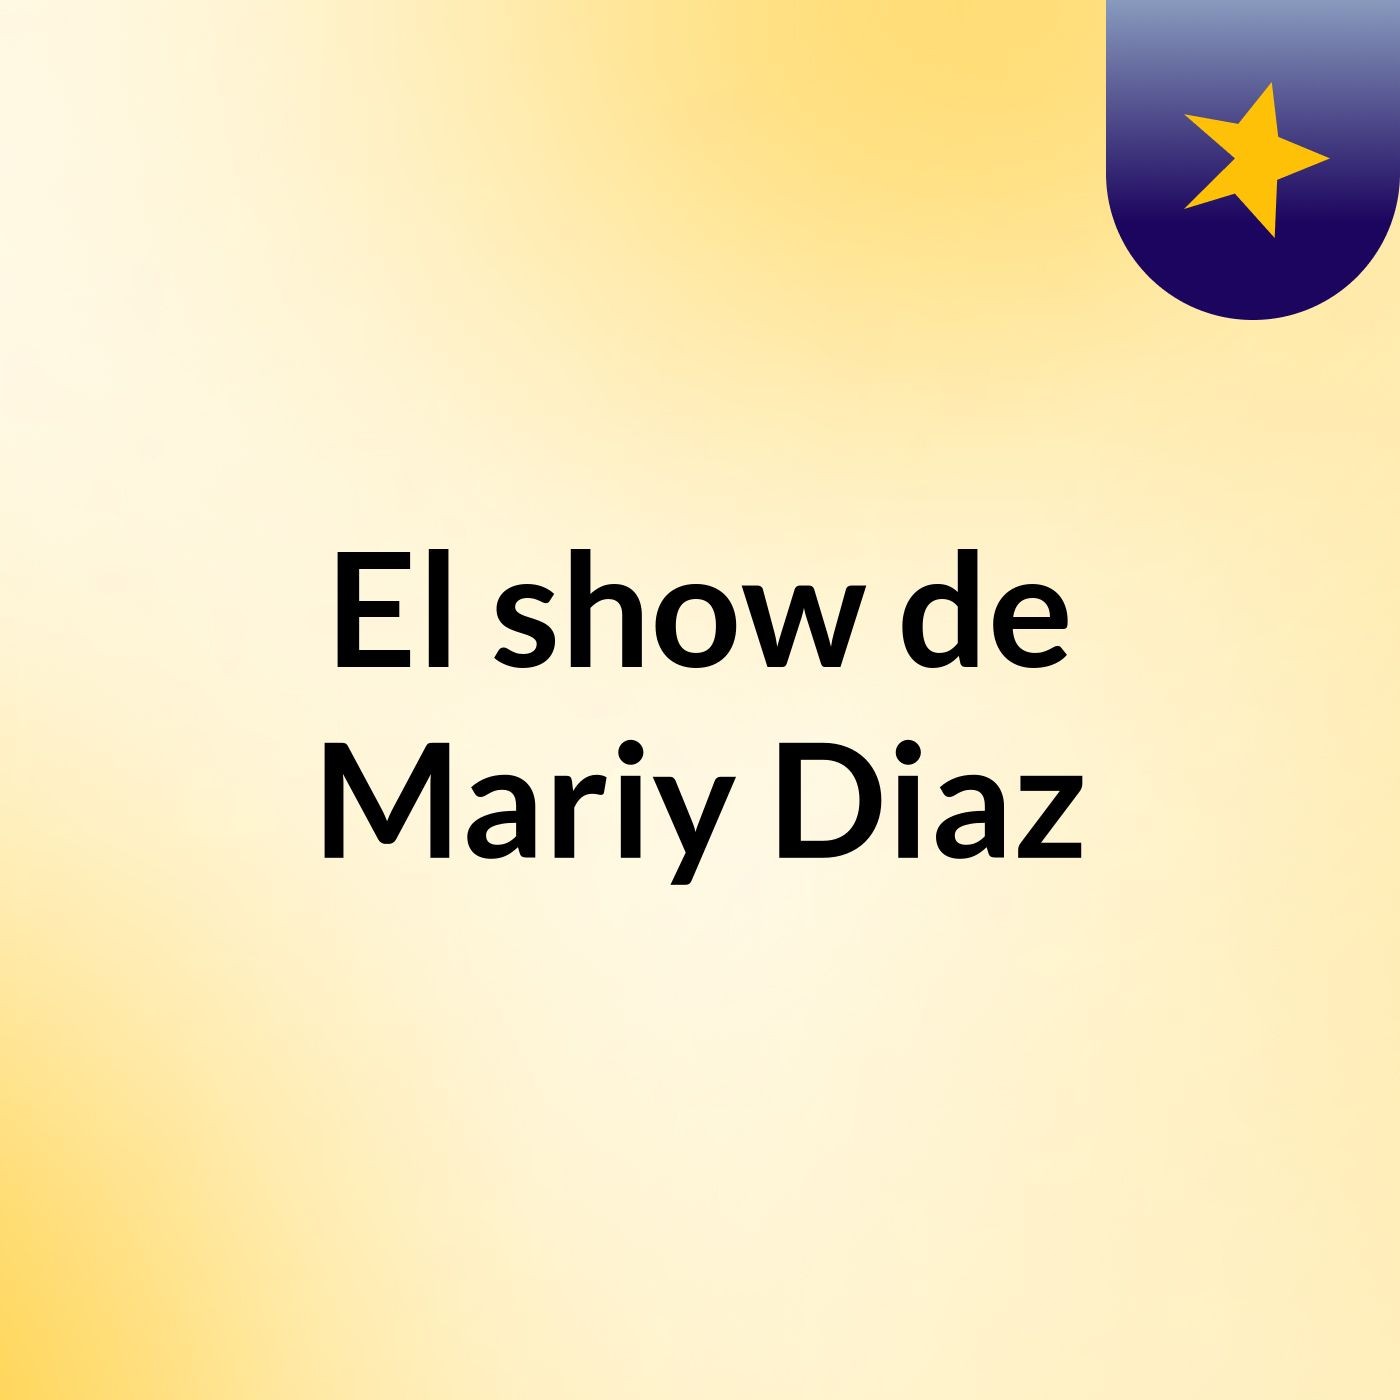 El show de Mariy Diaz